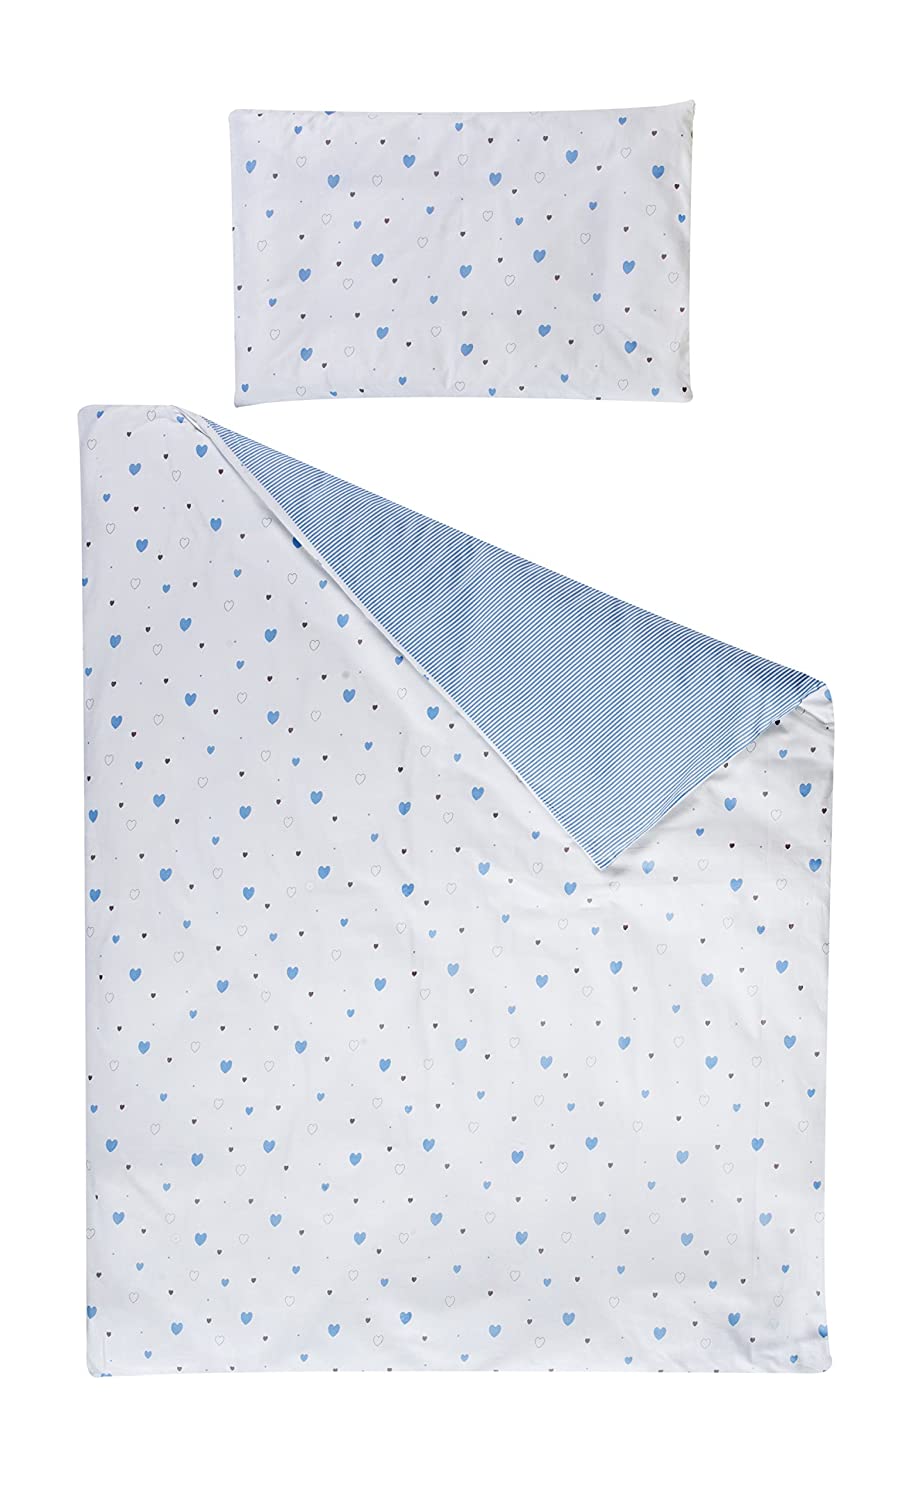 Schardt 13 502 1/791 2-piece bed linen, blue